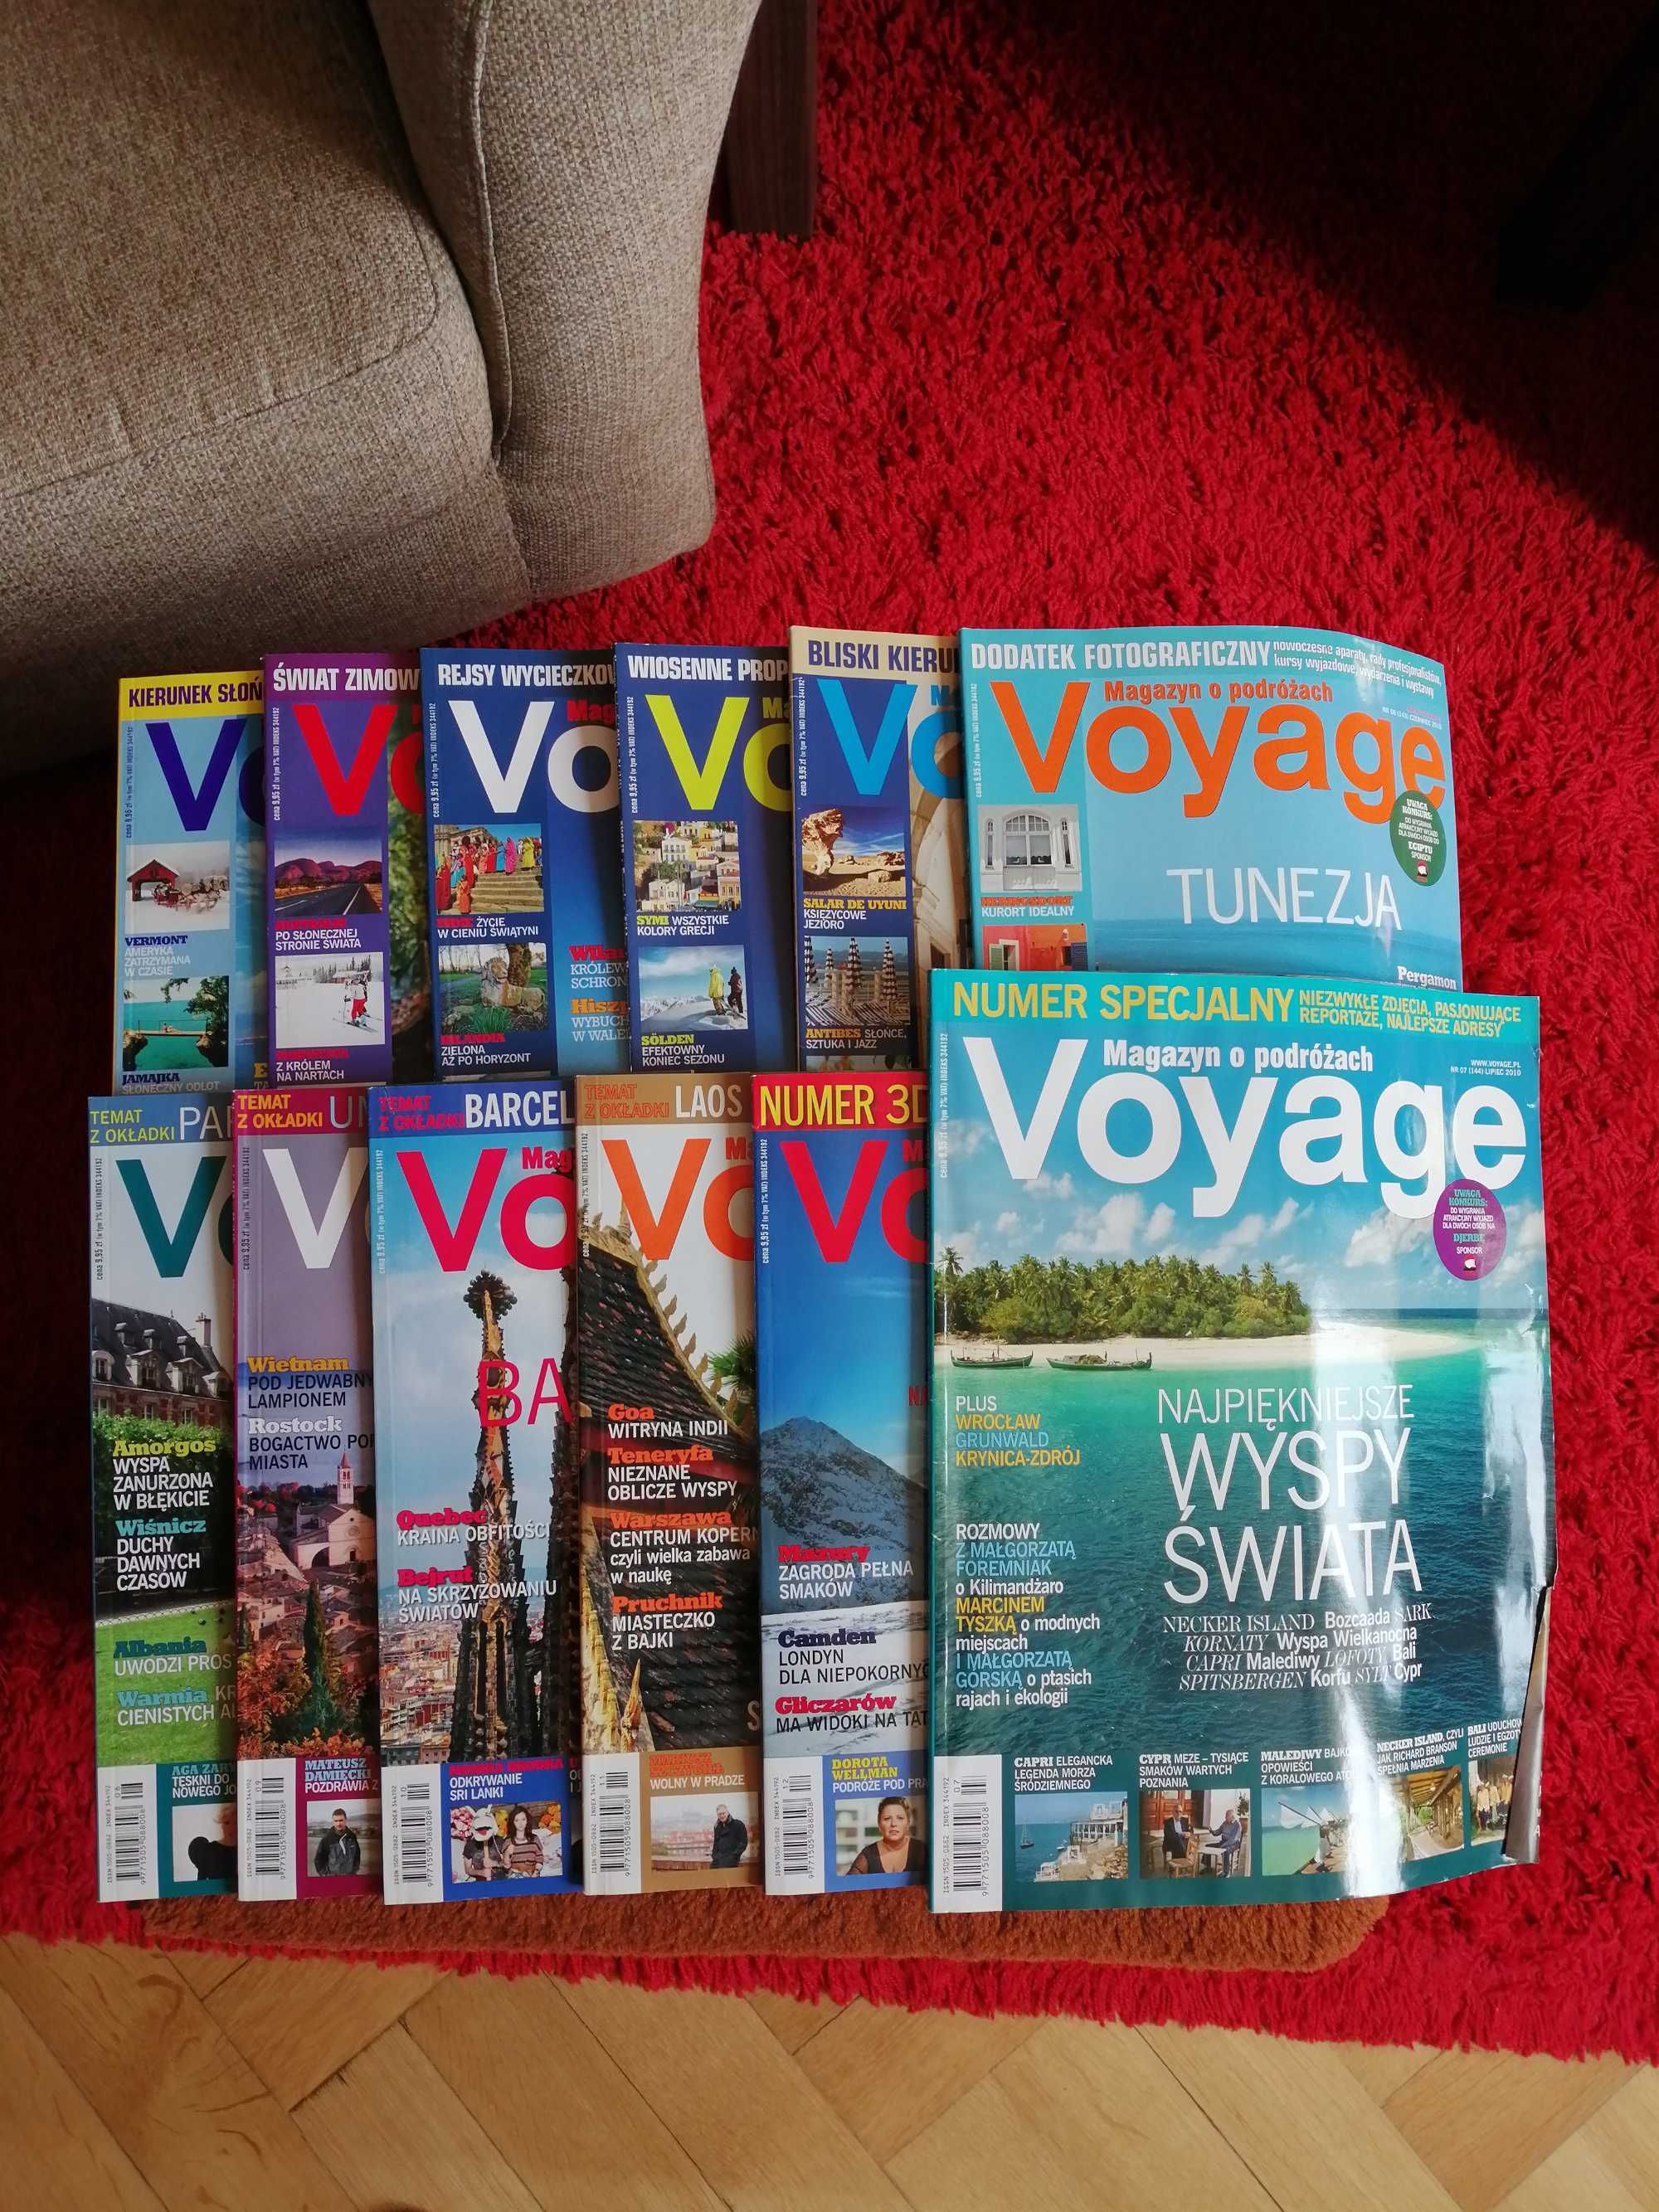 Voyage - magazyn podróżniczy rok 2010.